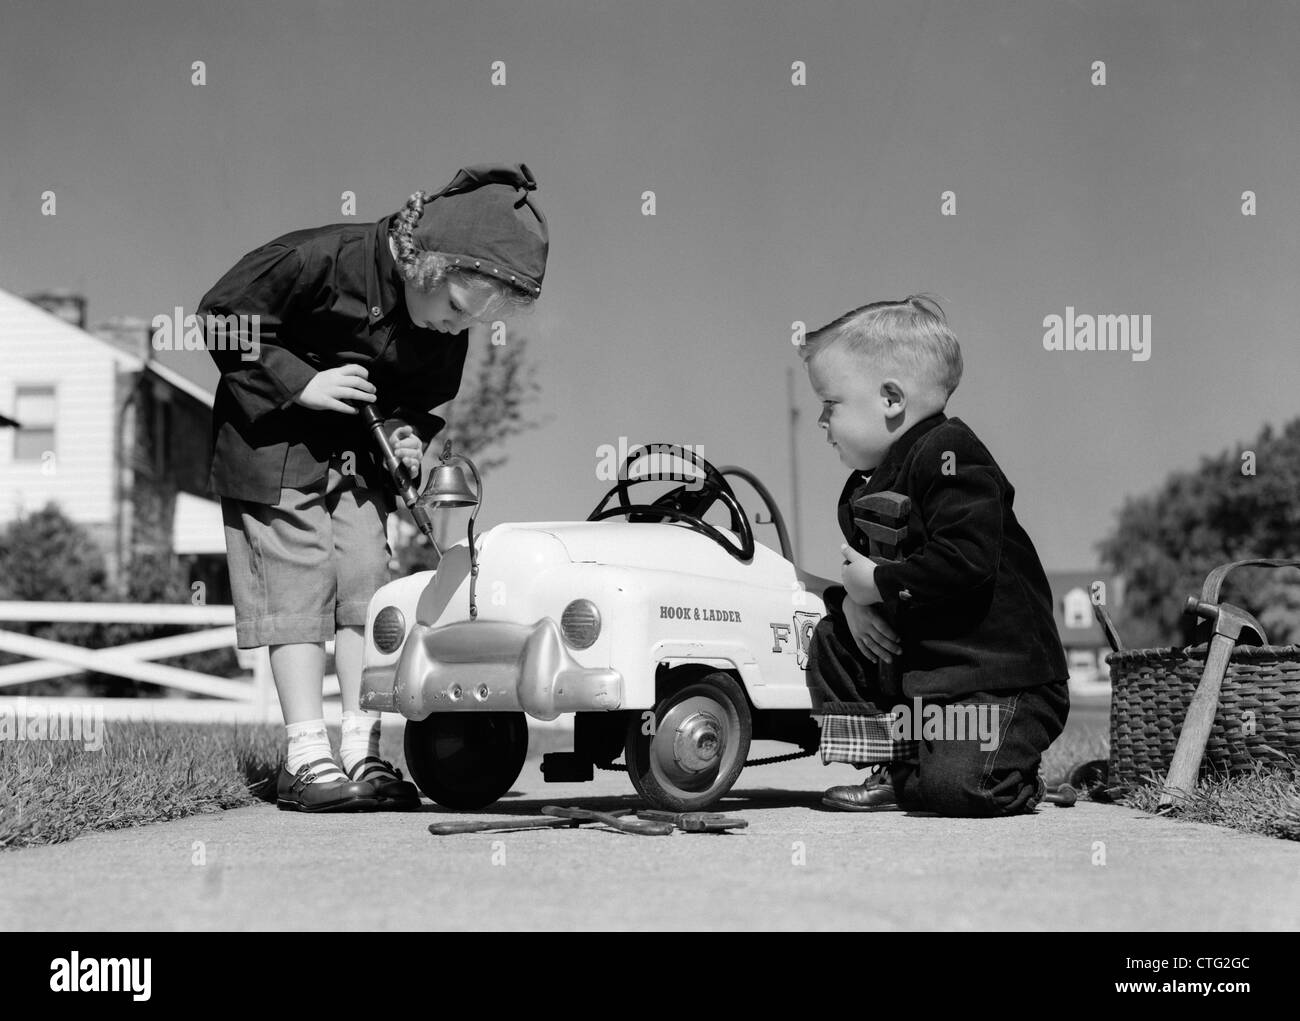 Degli anni cinquanta un ragazzo e una ragazza A GIOCARE A riparazione auto giocattolo Foto Stock